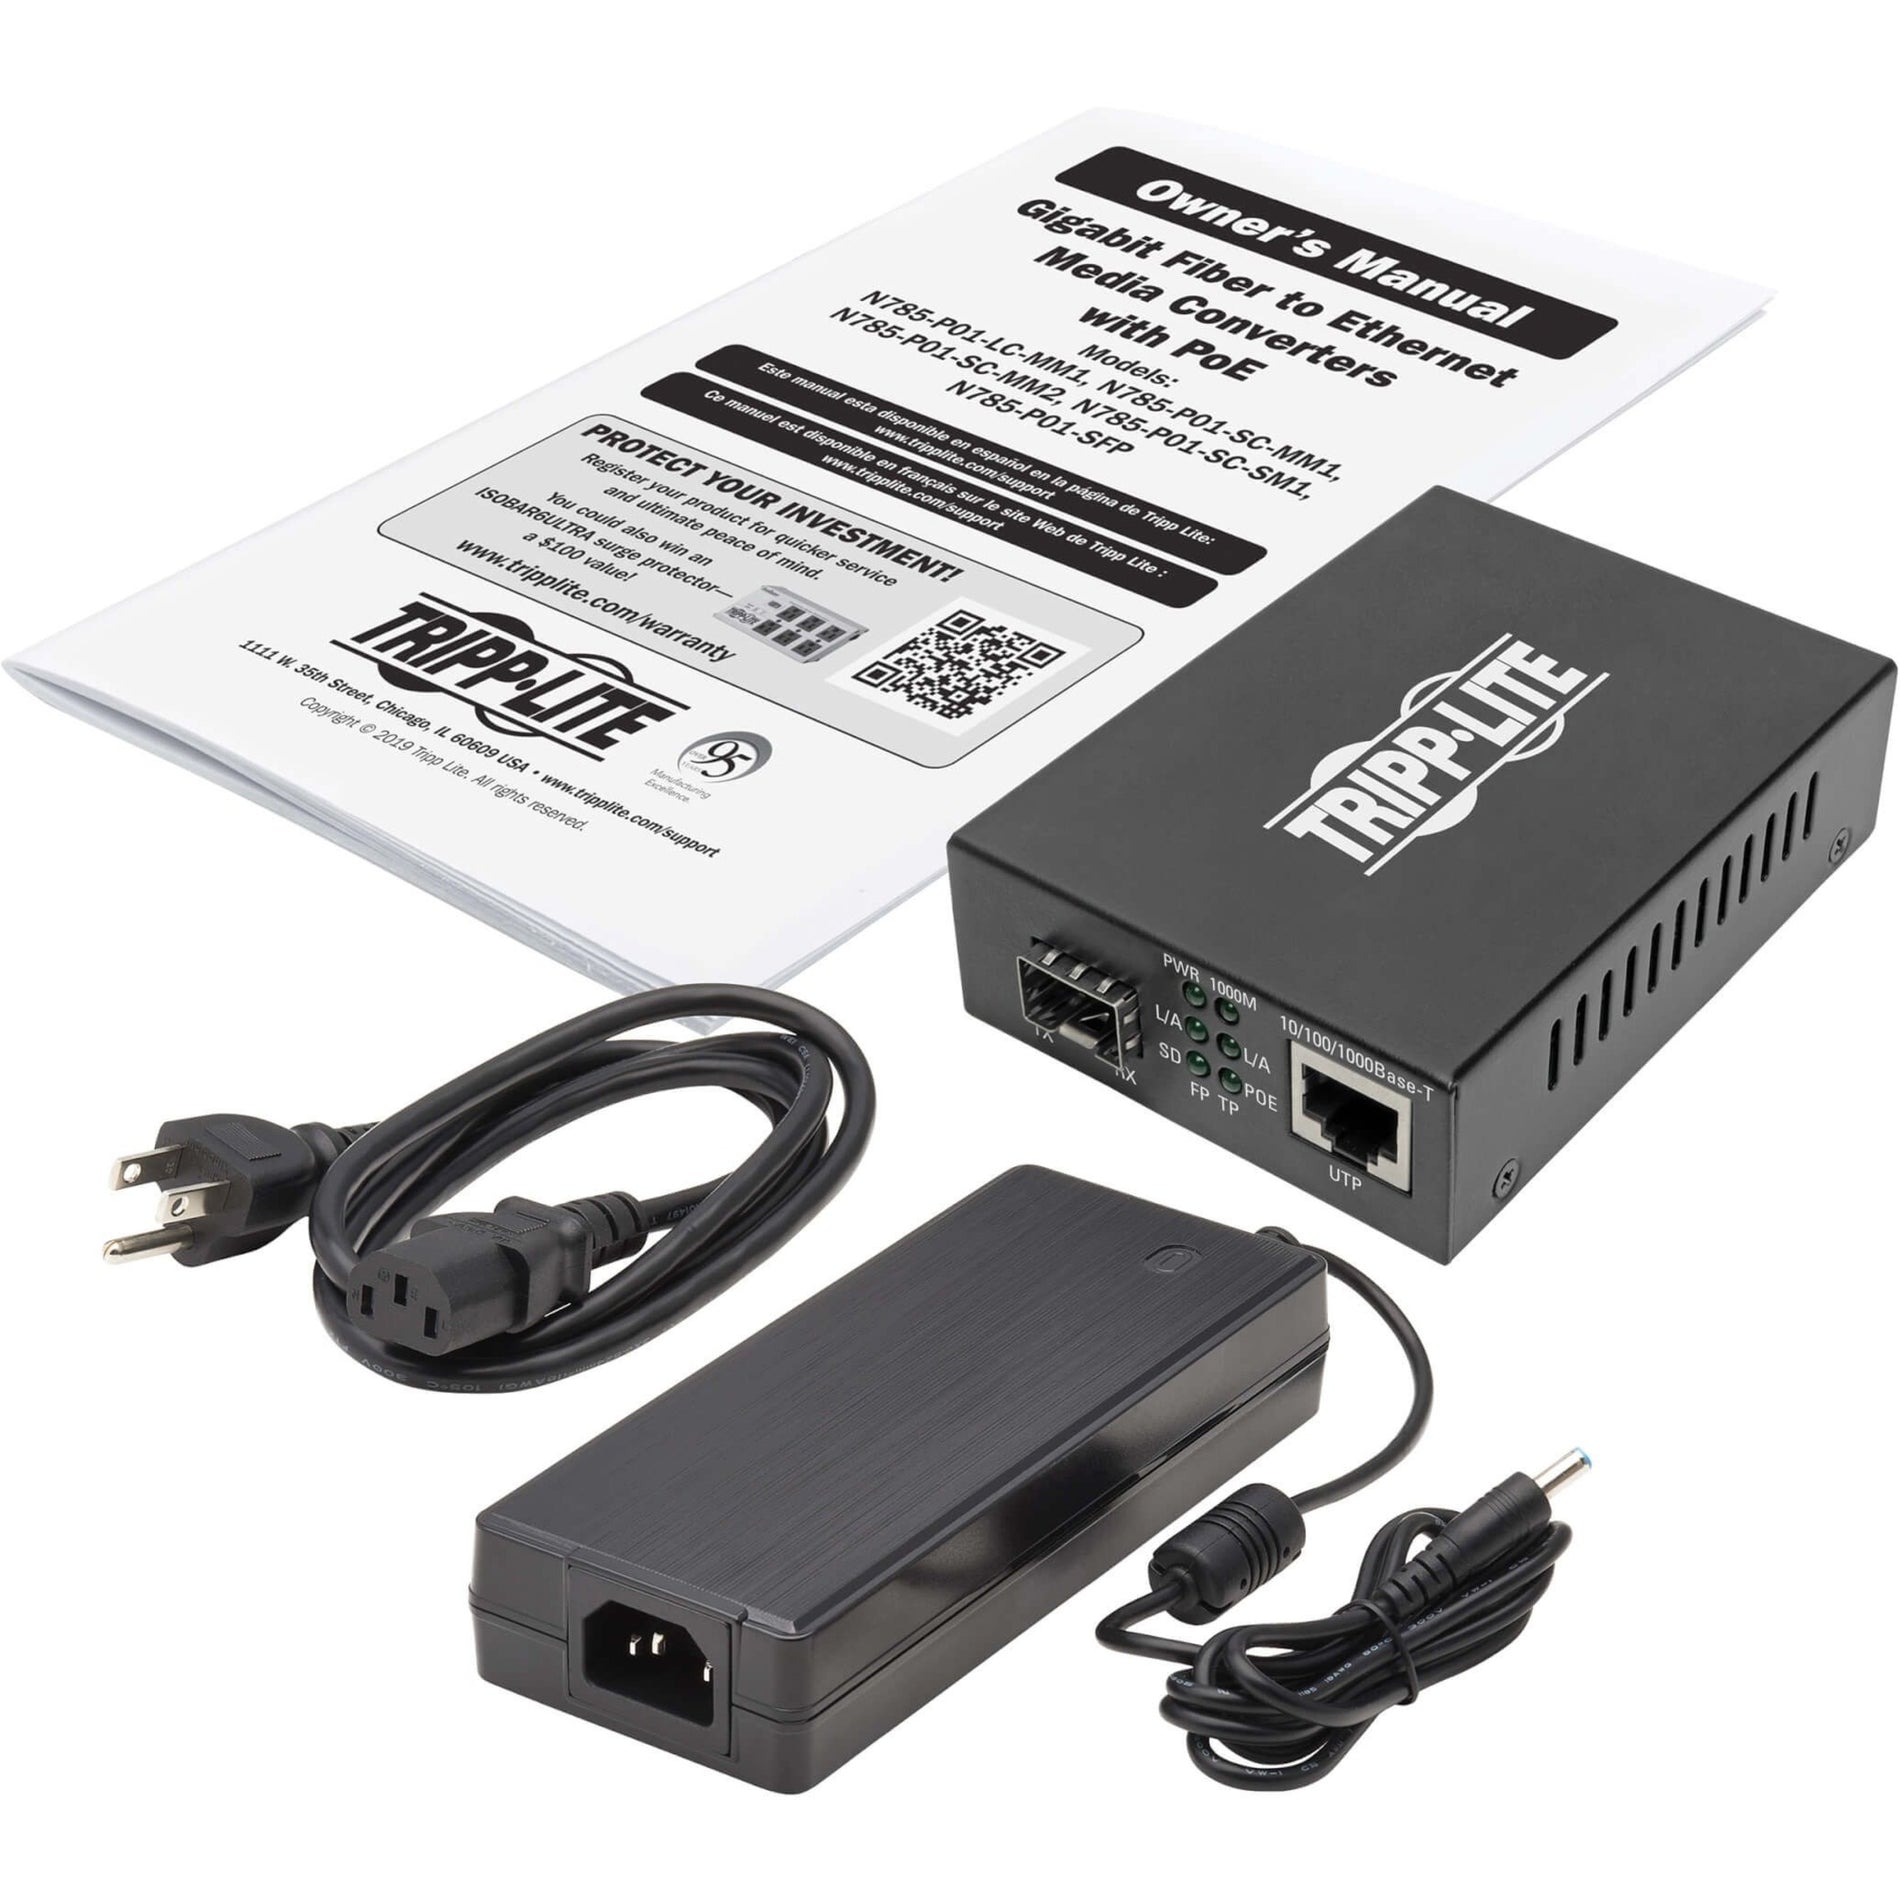 Tripp Lite N785-P01-SFP Gigabit SFP Fiber to Ethernet Media Converter, POE+ - 10/100/1000 Mbps